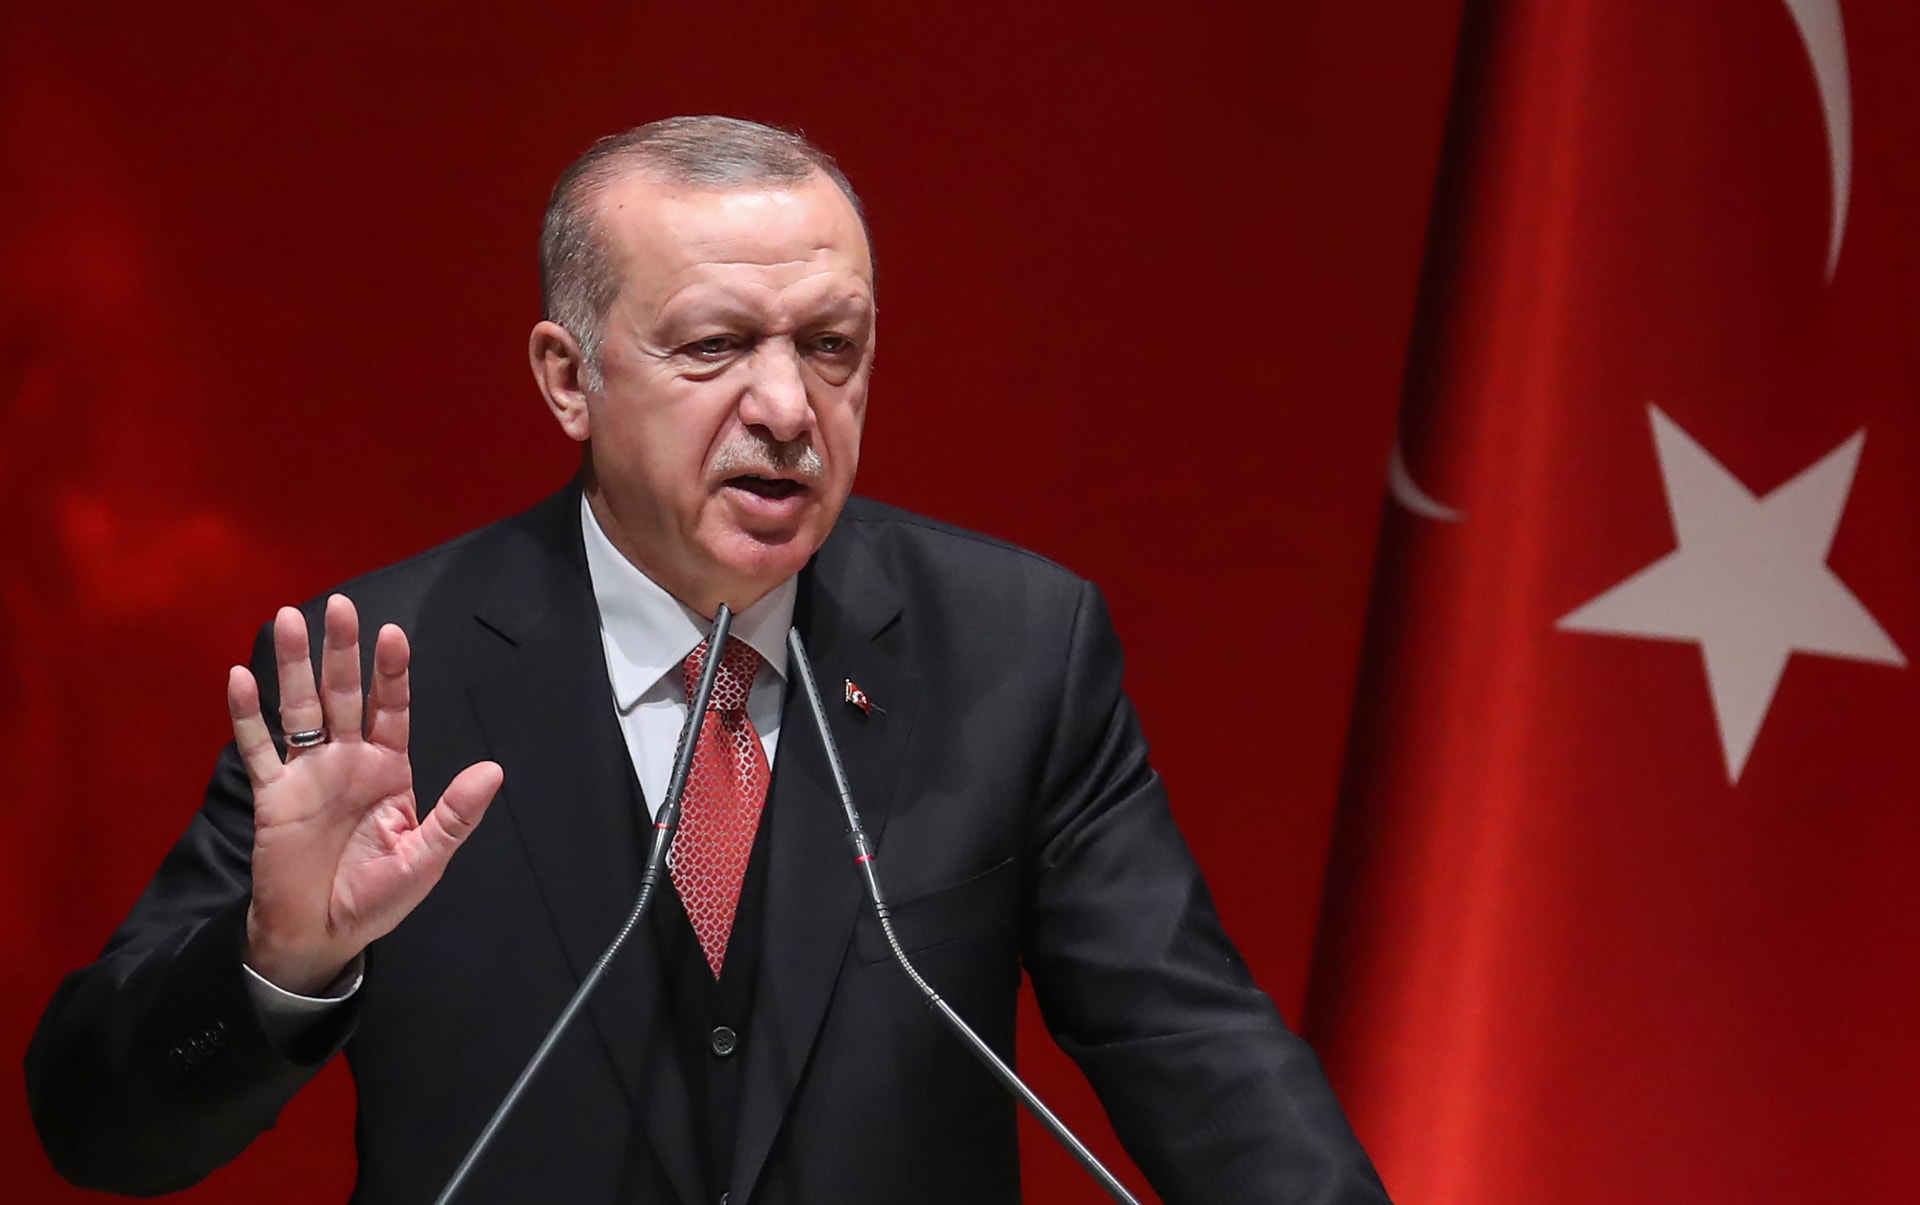  المعارضة التركية: إعلان أردوغان الترشح لولاية ثالثة مخالف للدستور